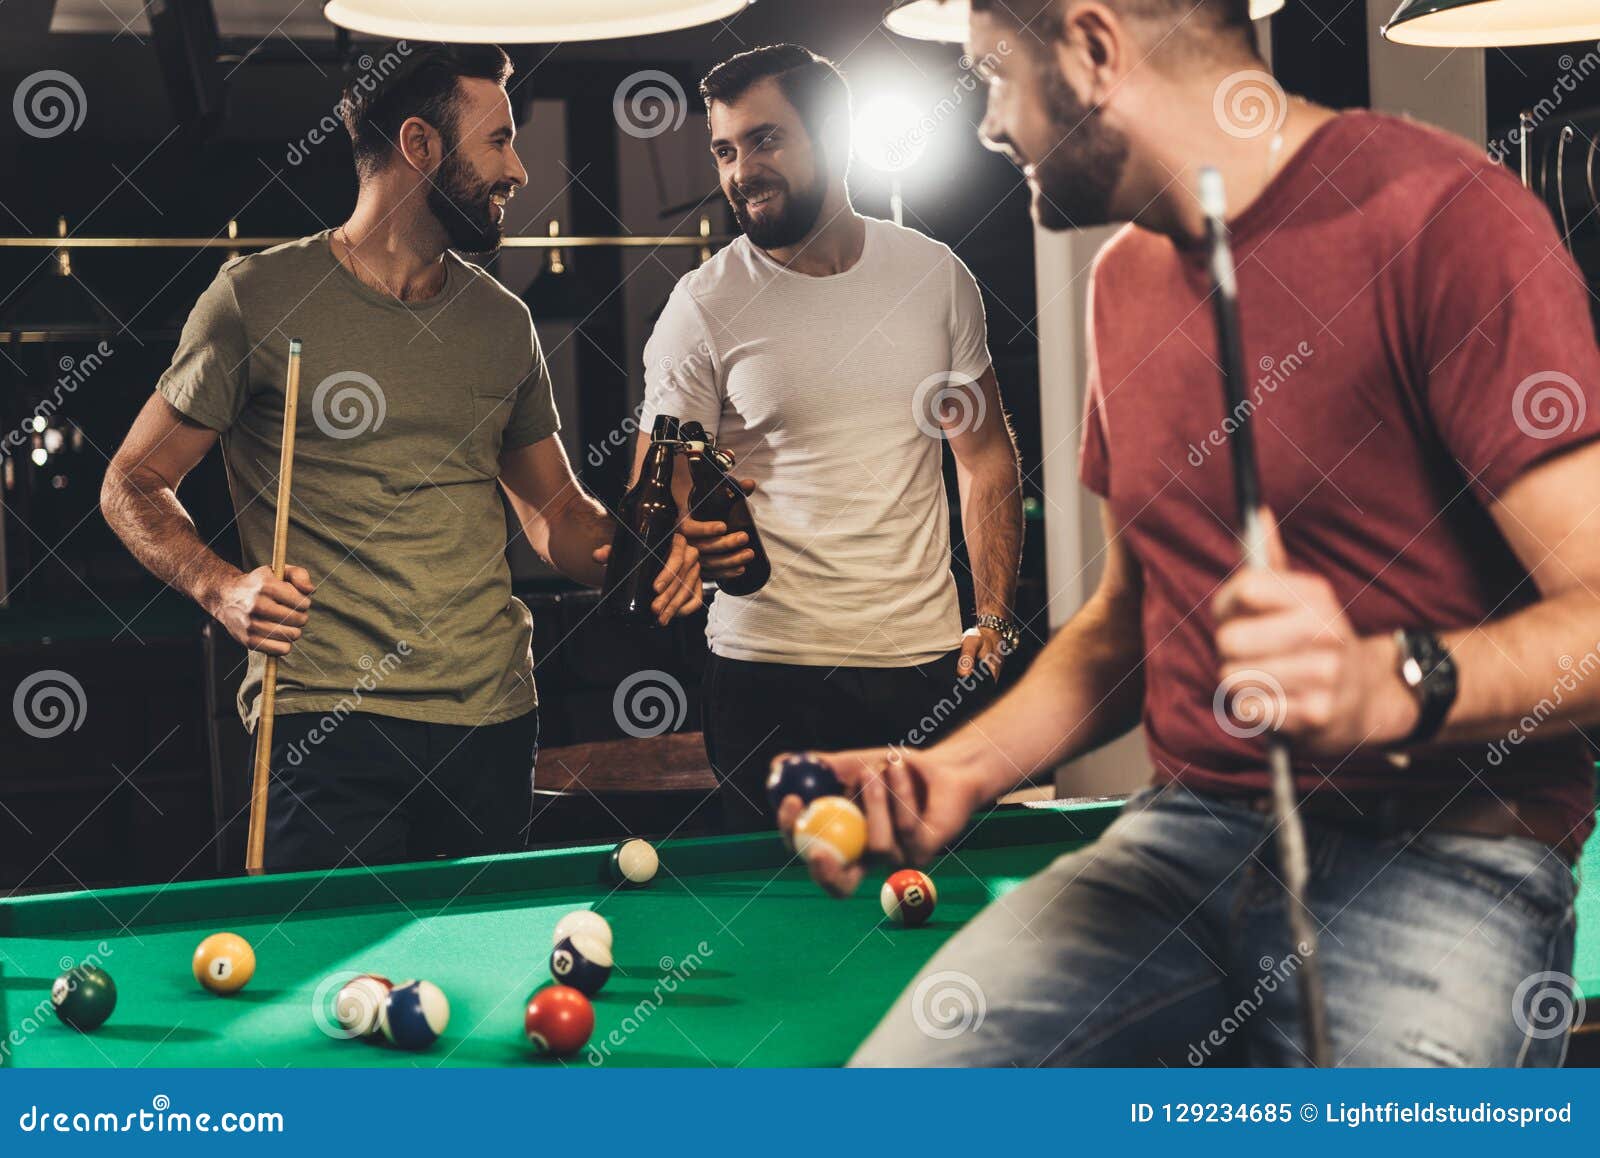 young caucasian men drinking beer beside billiard table